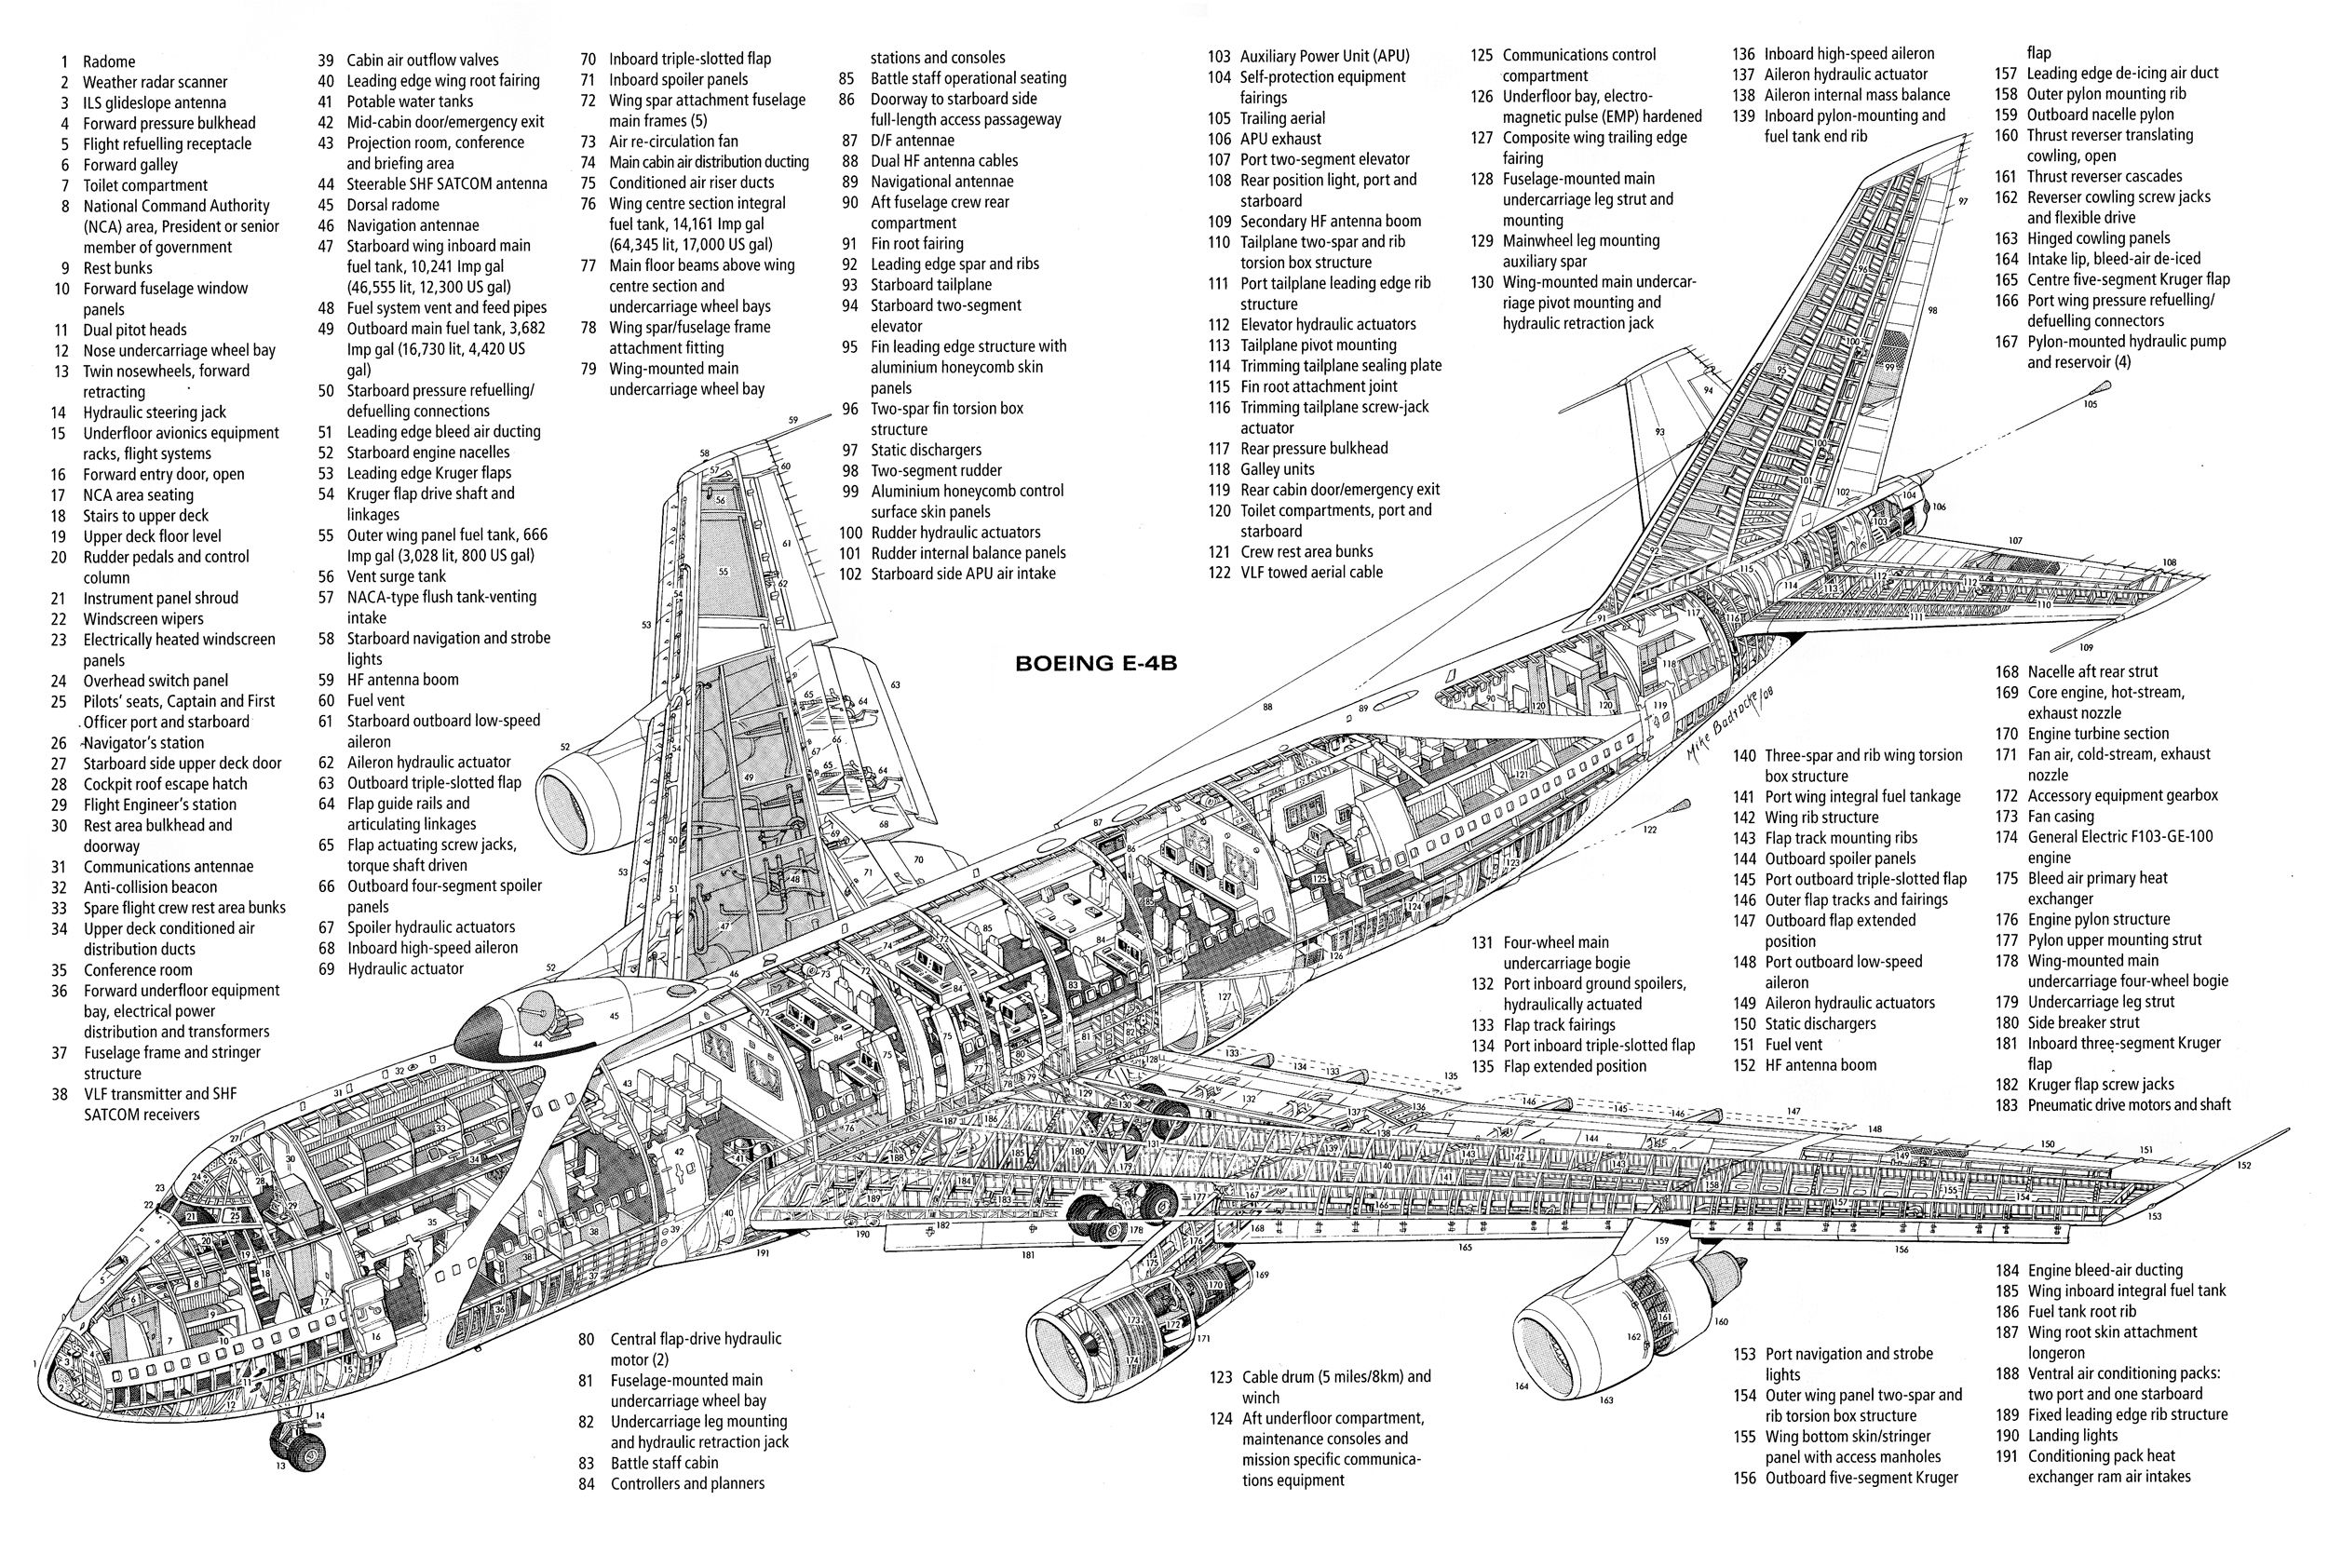 boeinge4b | Aircraft of World War II - WW2Aircraft.net Forums